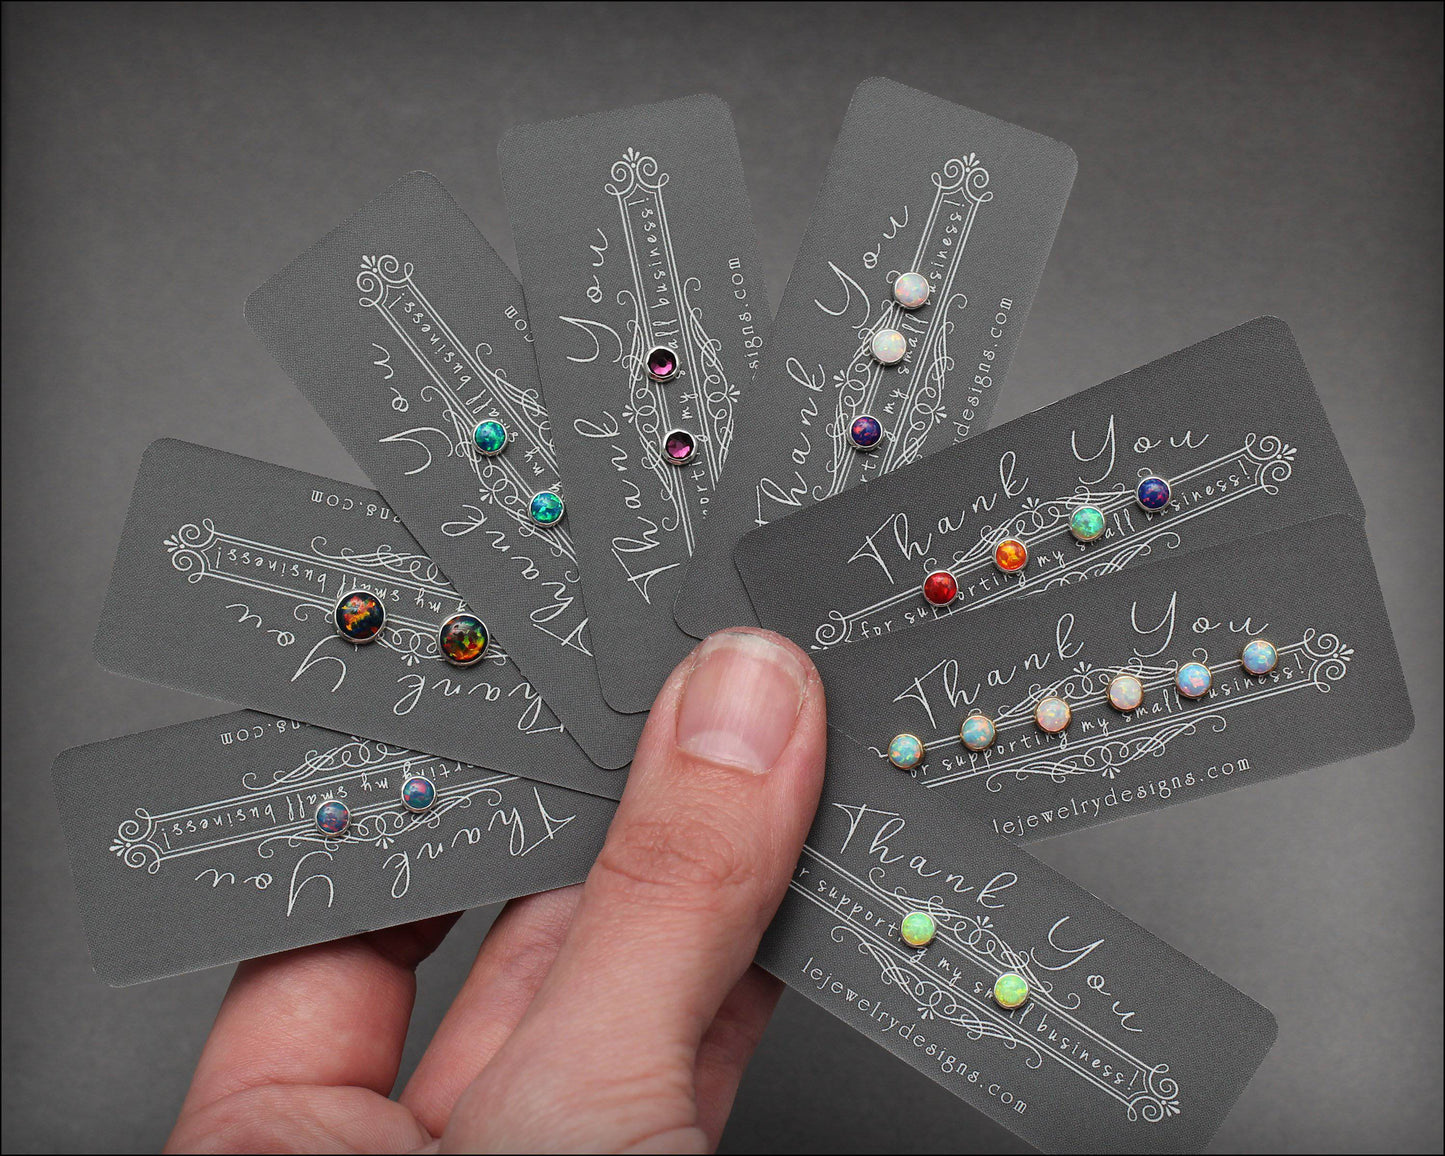 Opal Stud Earrings (4mm) - LE Jewelry Designs